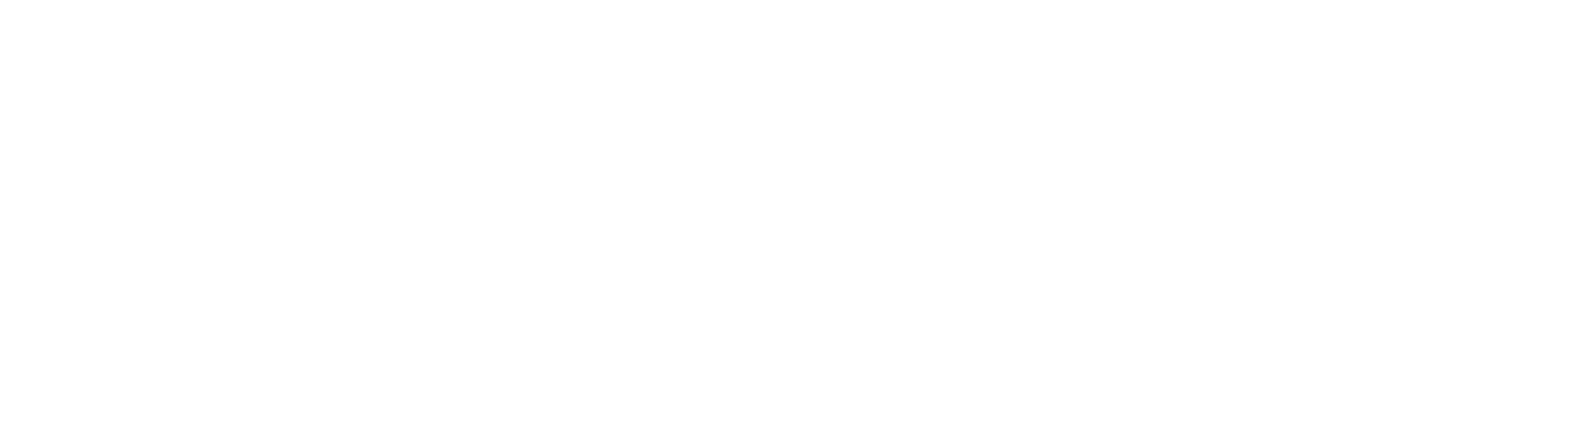 Methode Electronics
 logo large for dark backgrounds (transparent PNG)